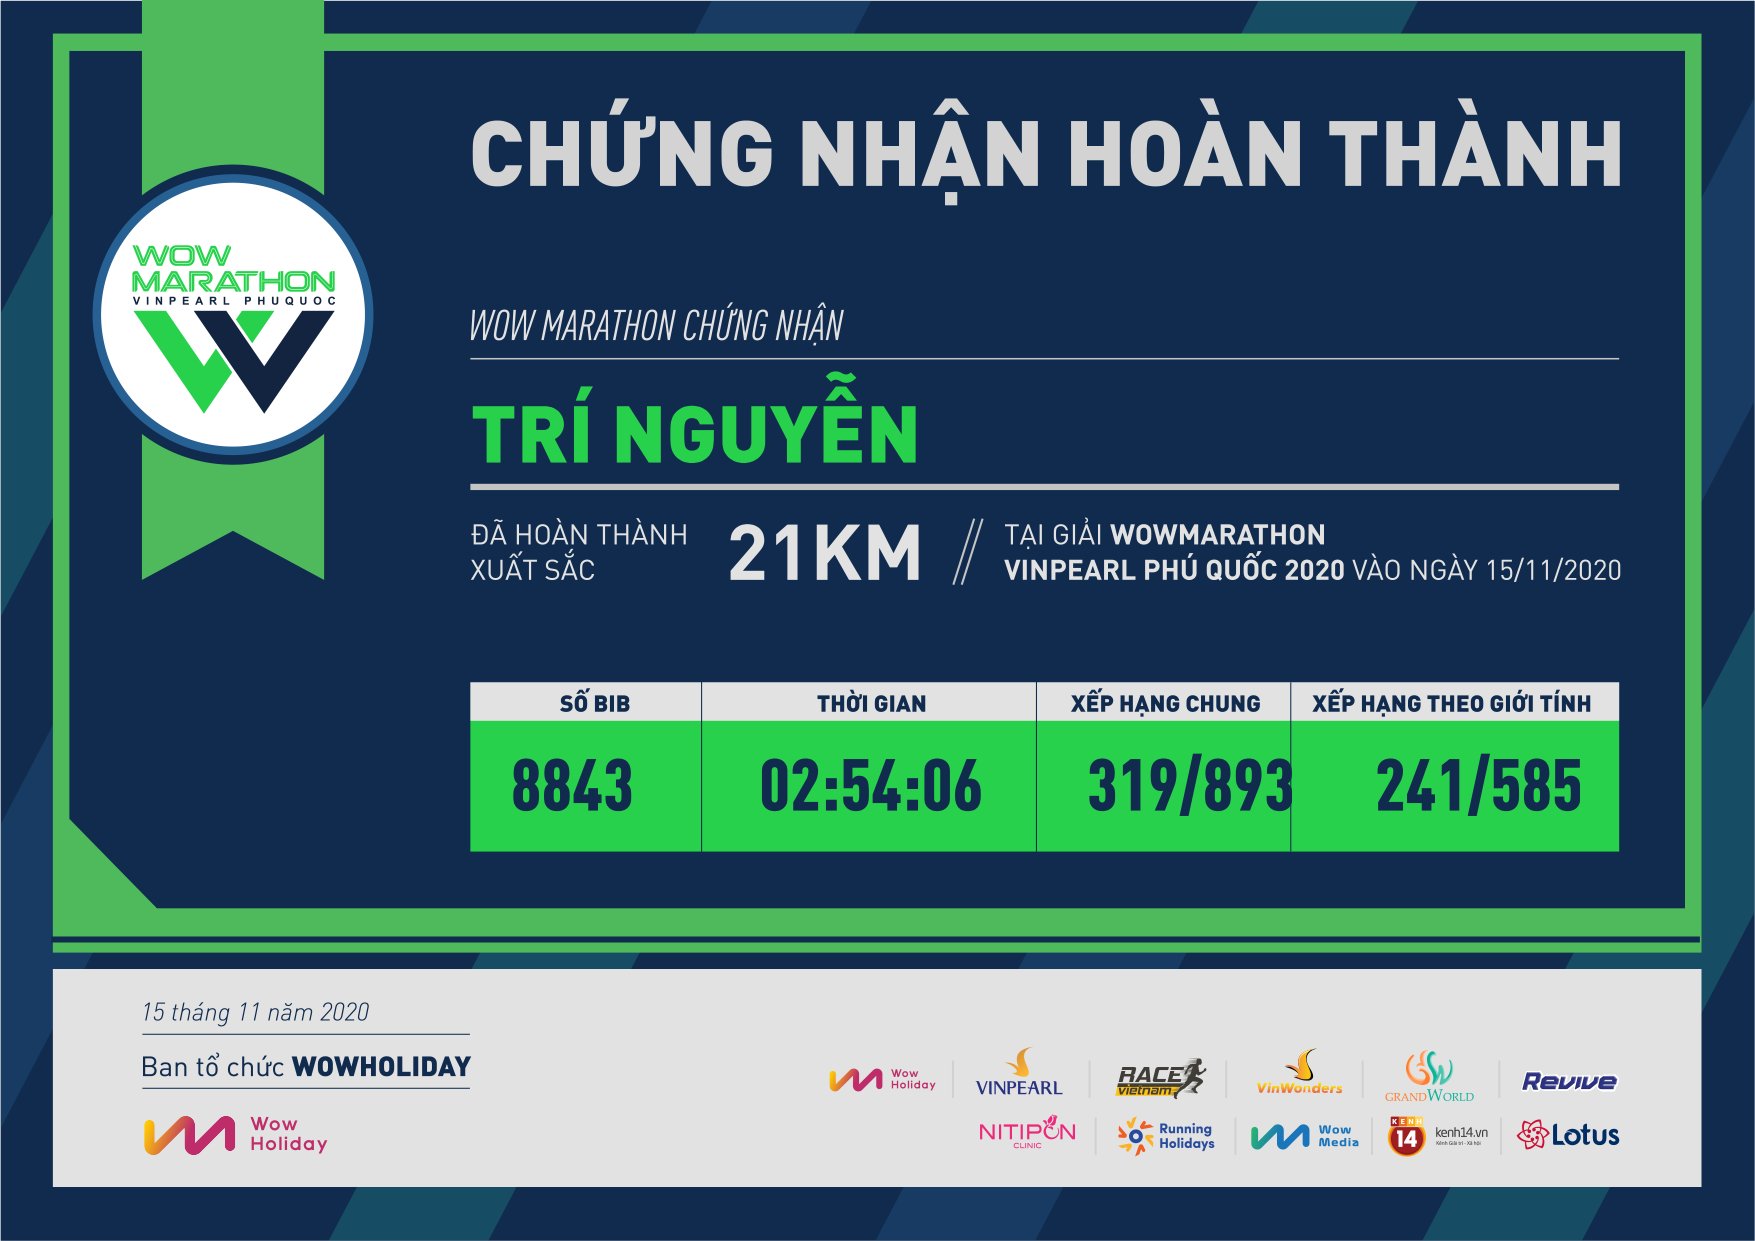 8843 - Trí Nguyễn